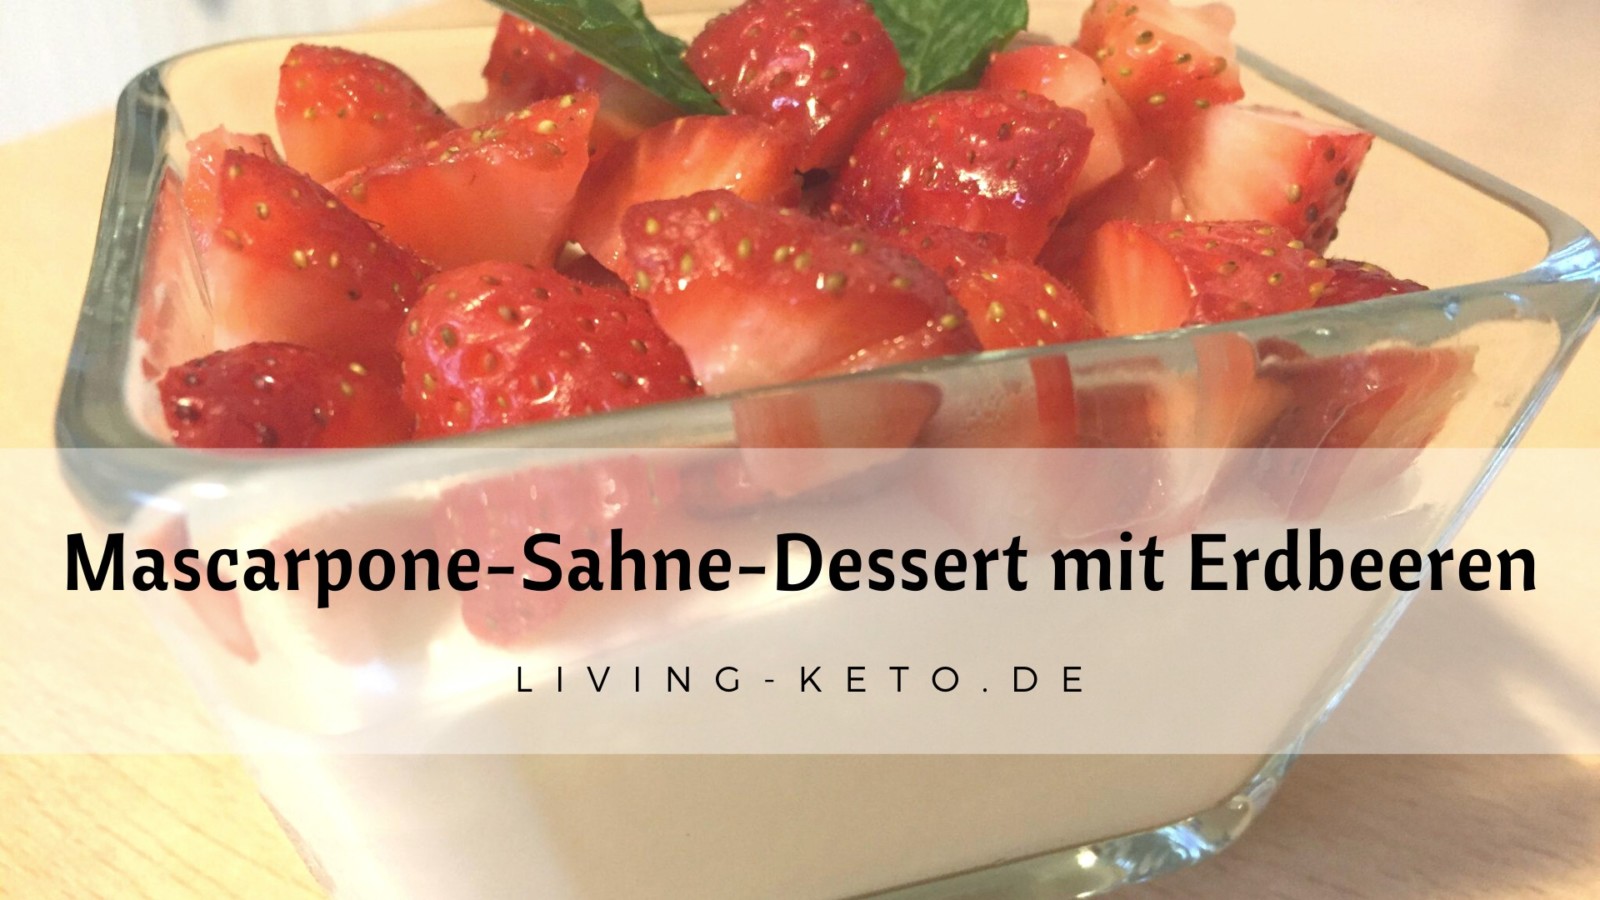 Mascarpone-Sahne-Dessert mit Erdbeeren | Ketogen Leben